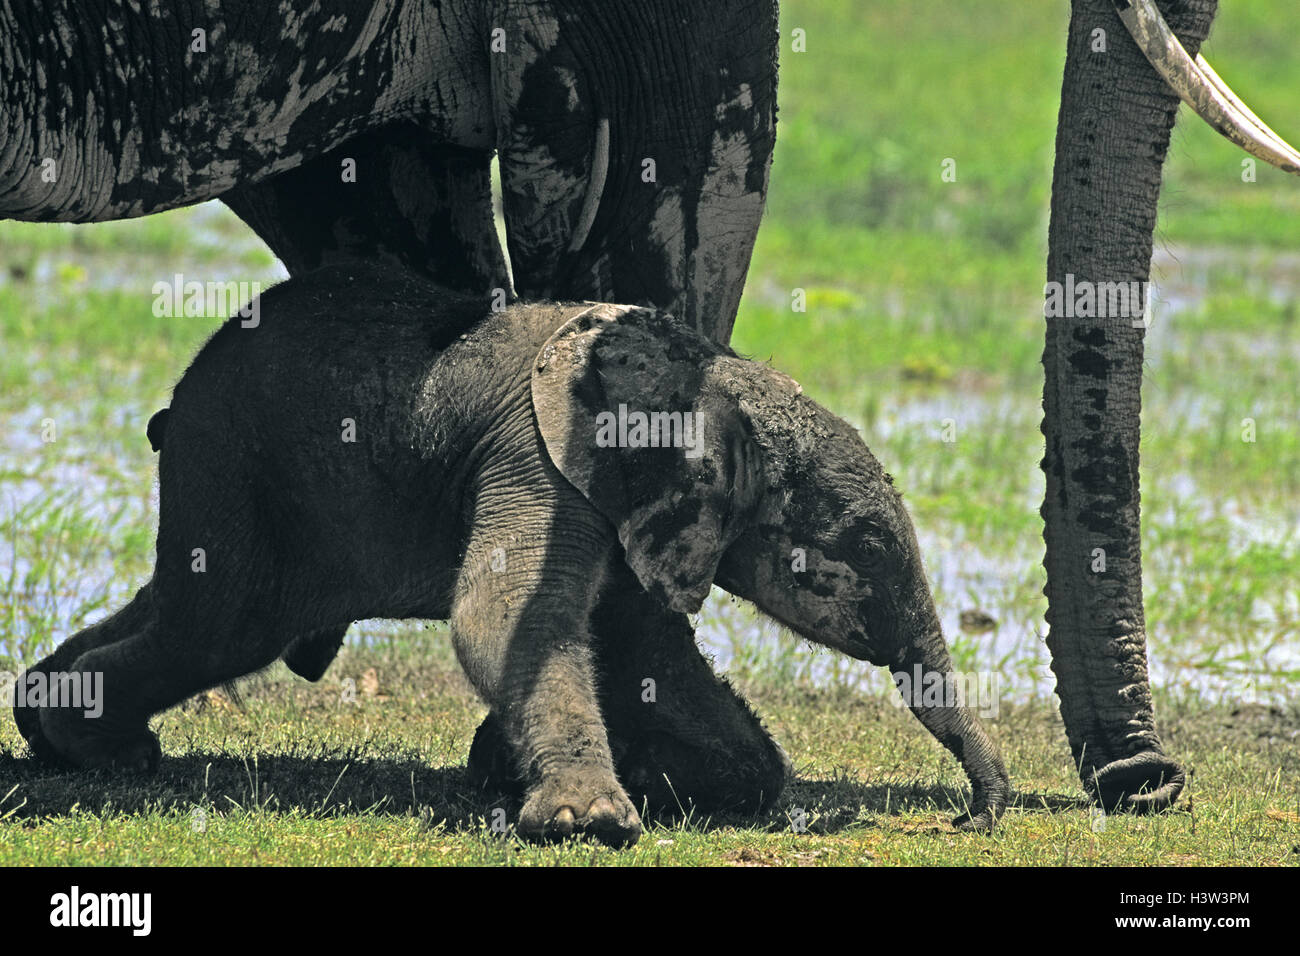 African elephant (Loxodonta africana) Stock Photo